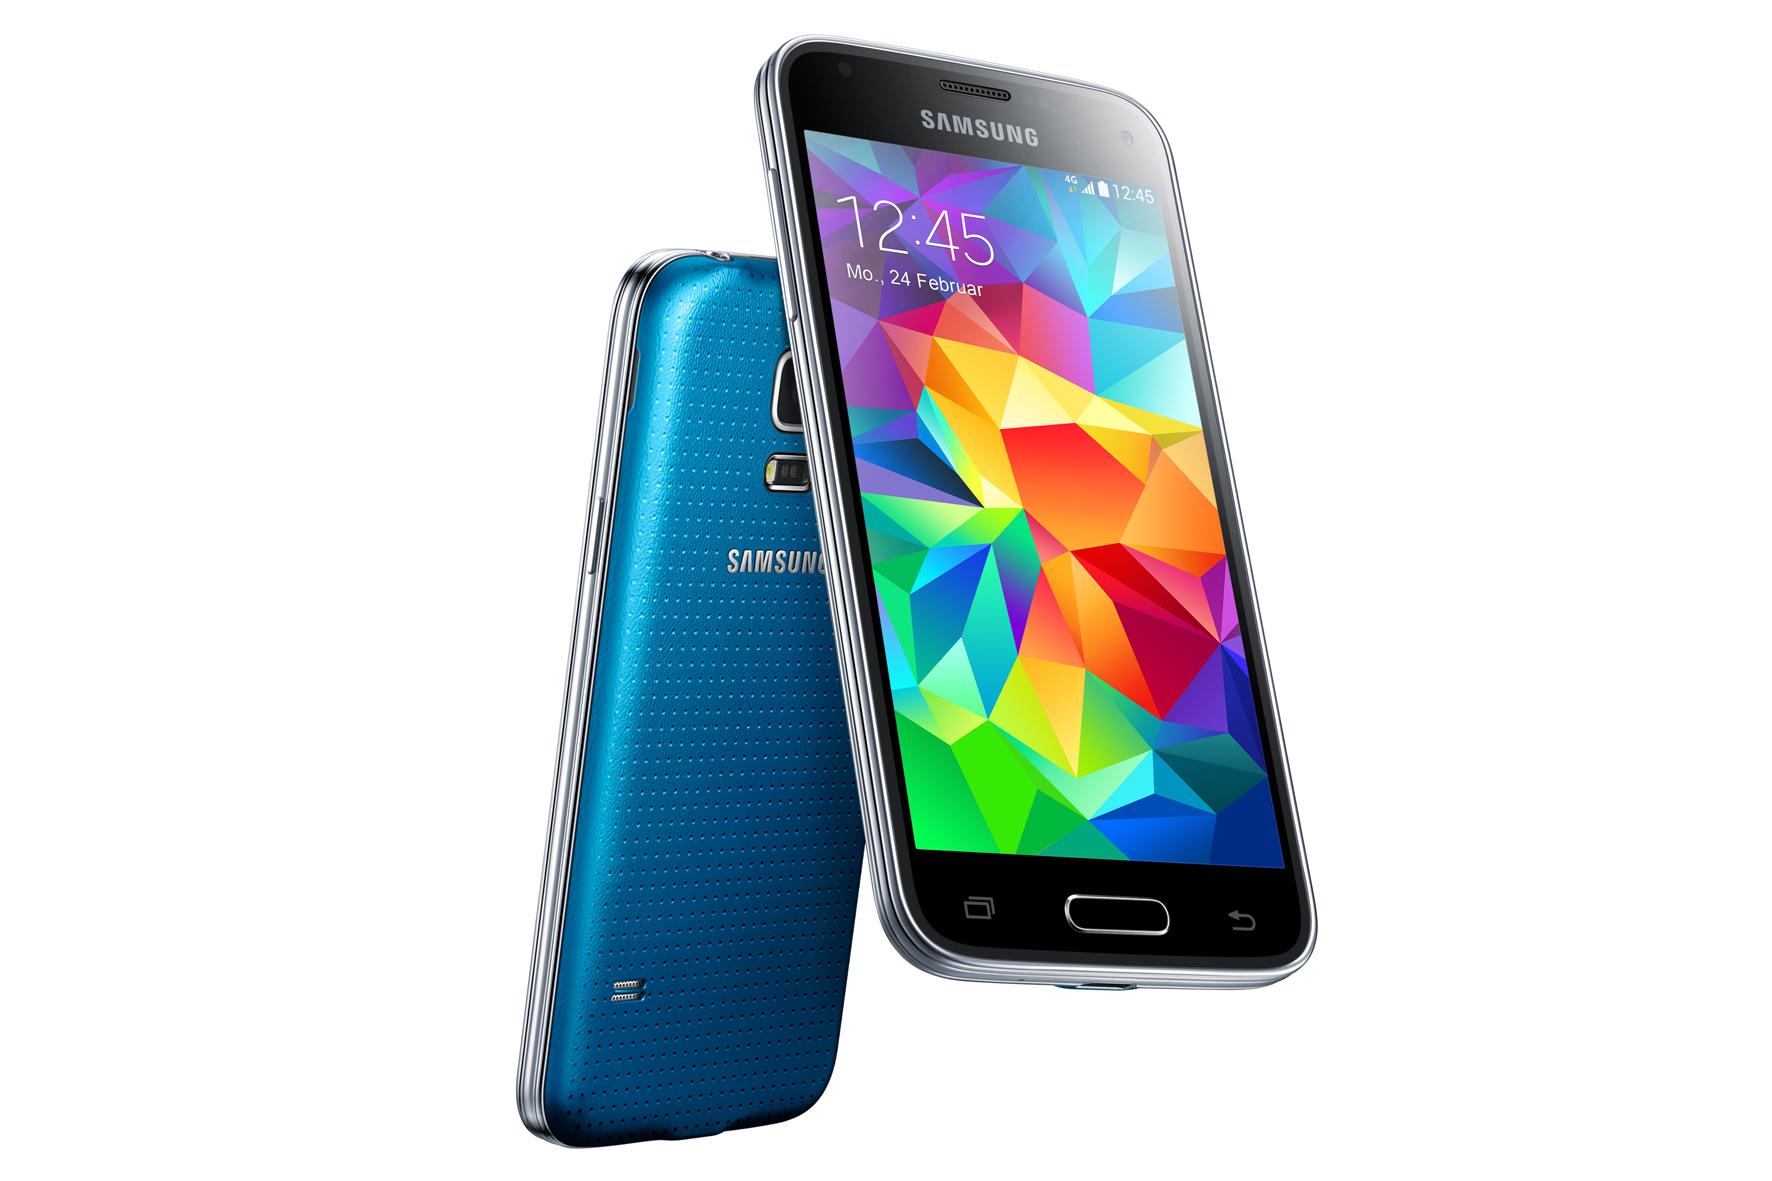 Galaxy S5 mini ab sofort für rund 400 Euro verfügbar  All About Samsung